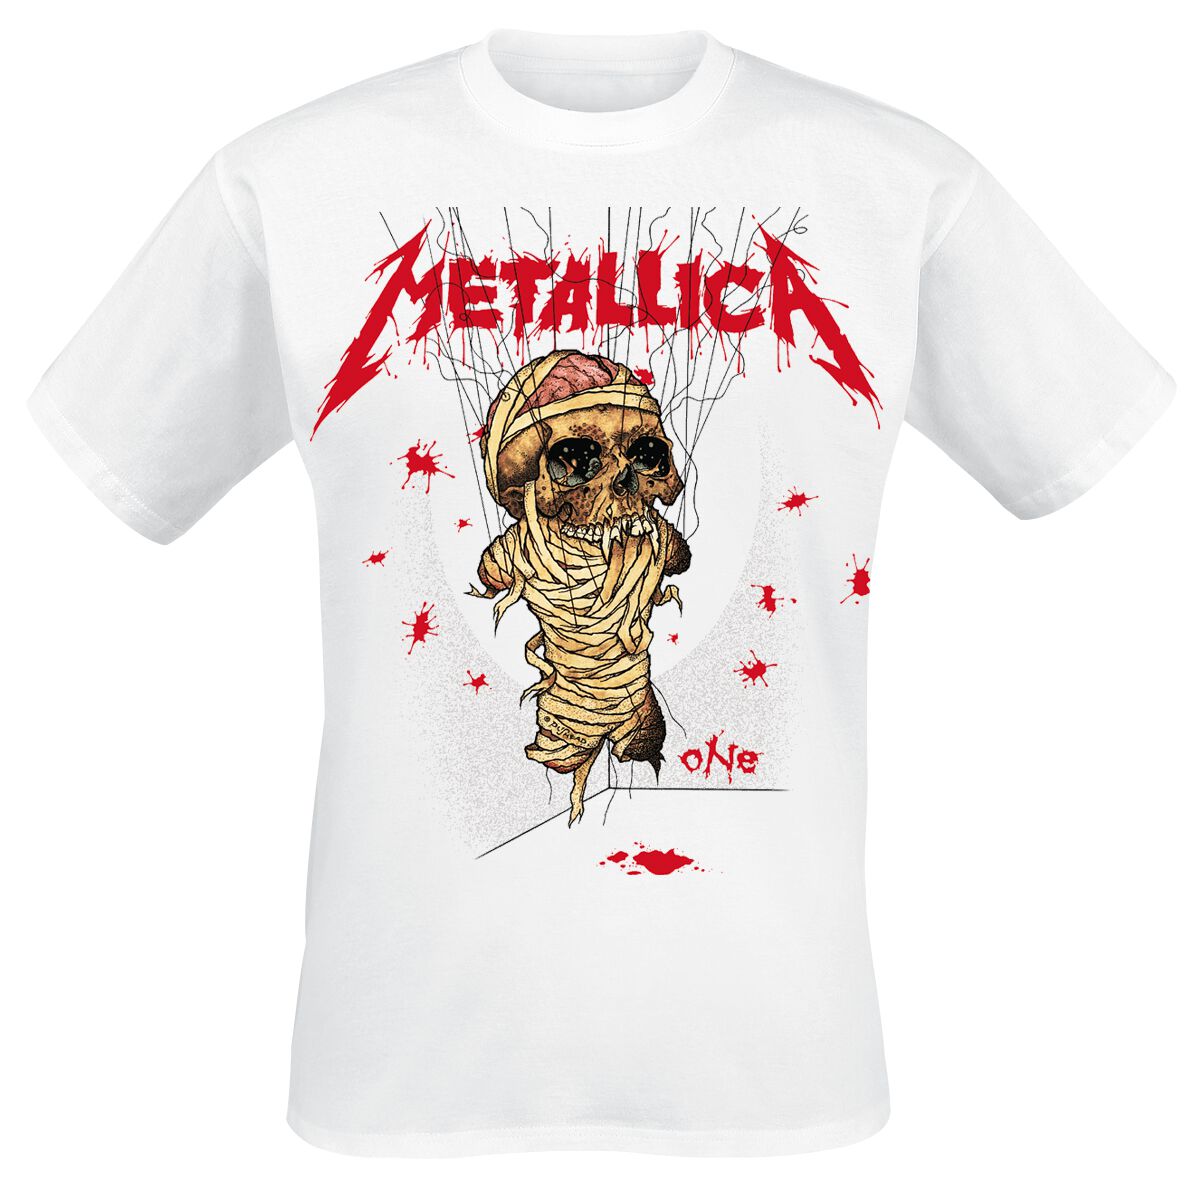 Metallica T-Shirt - One Landmine - S bis 3XL - für Männer - Größe L - weiß  - Lizenziertes Merchandise!